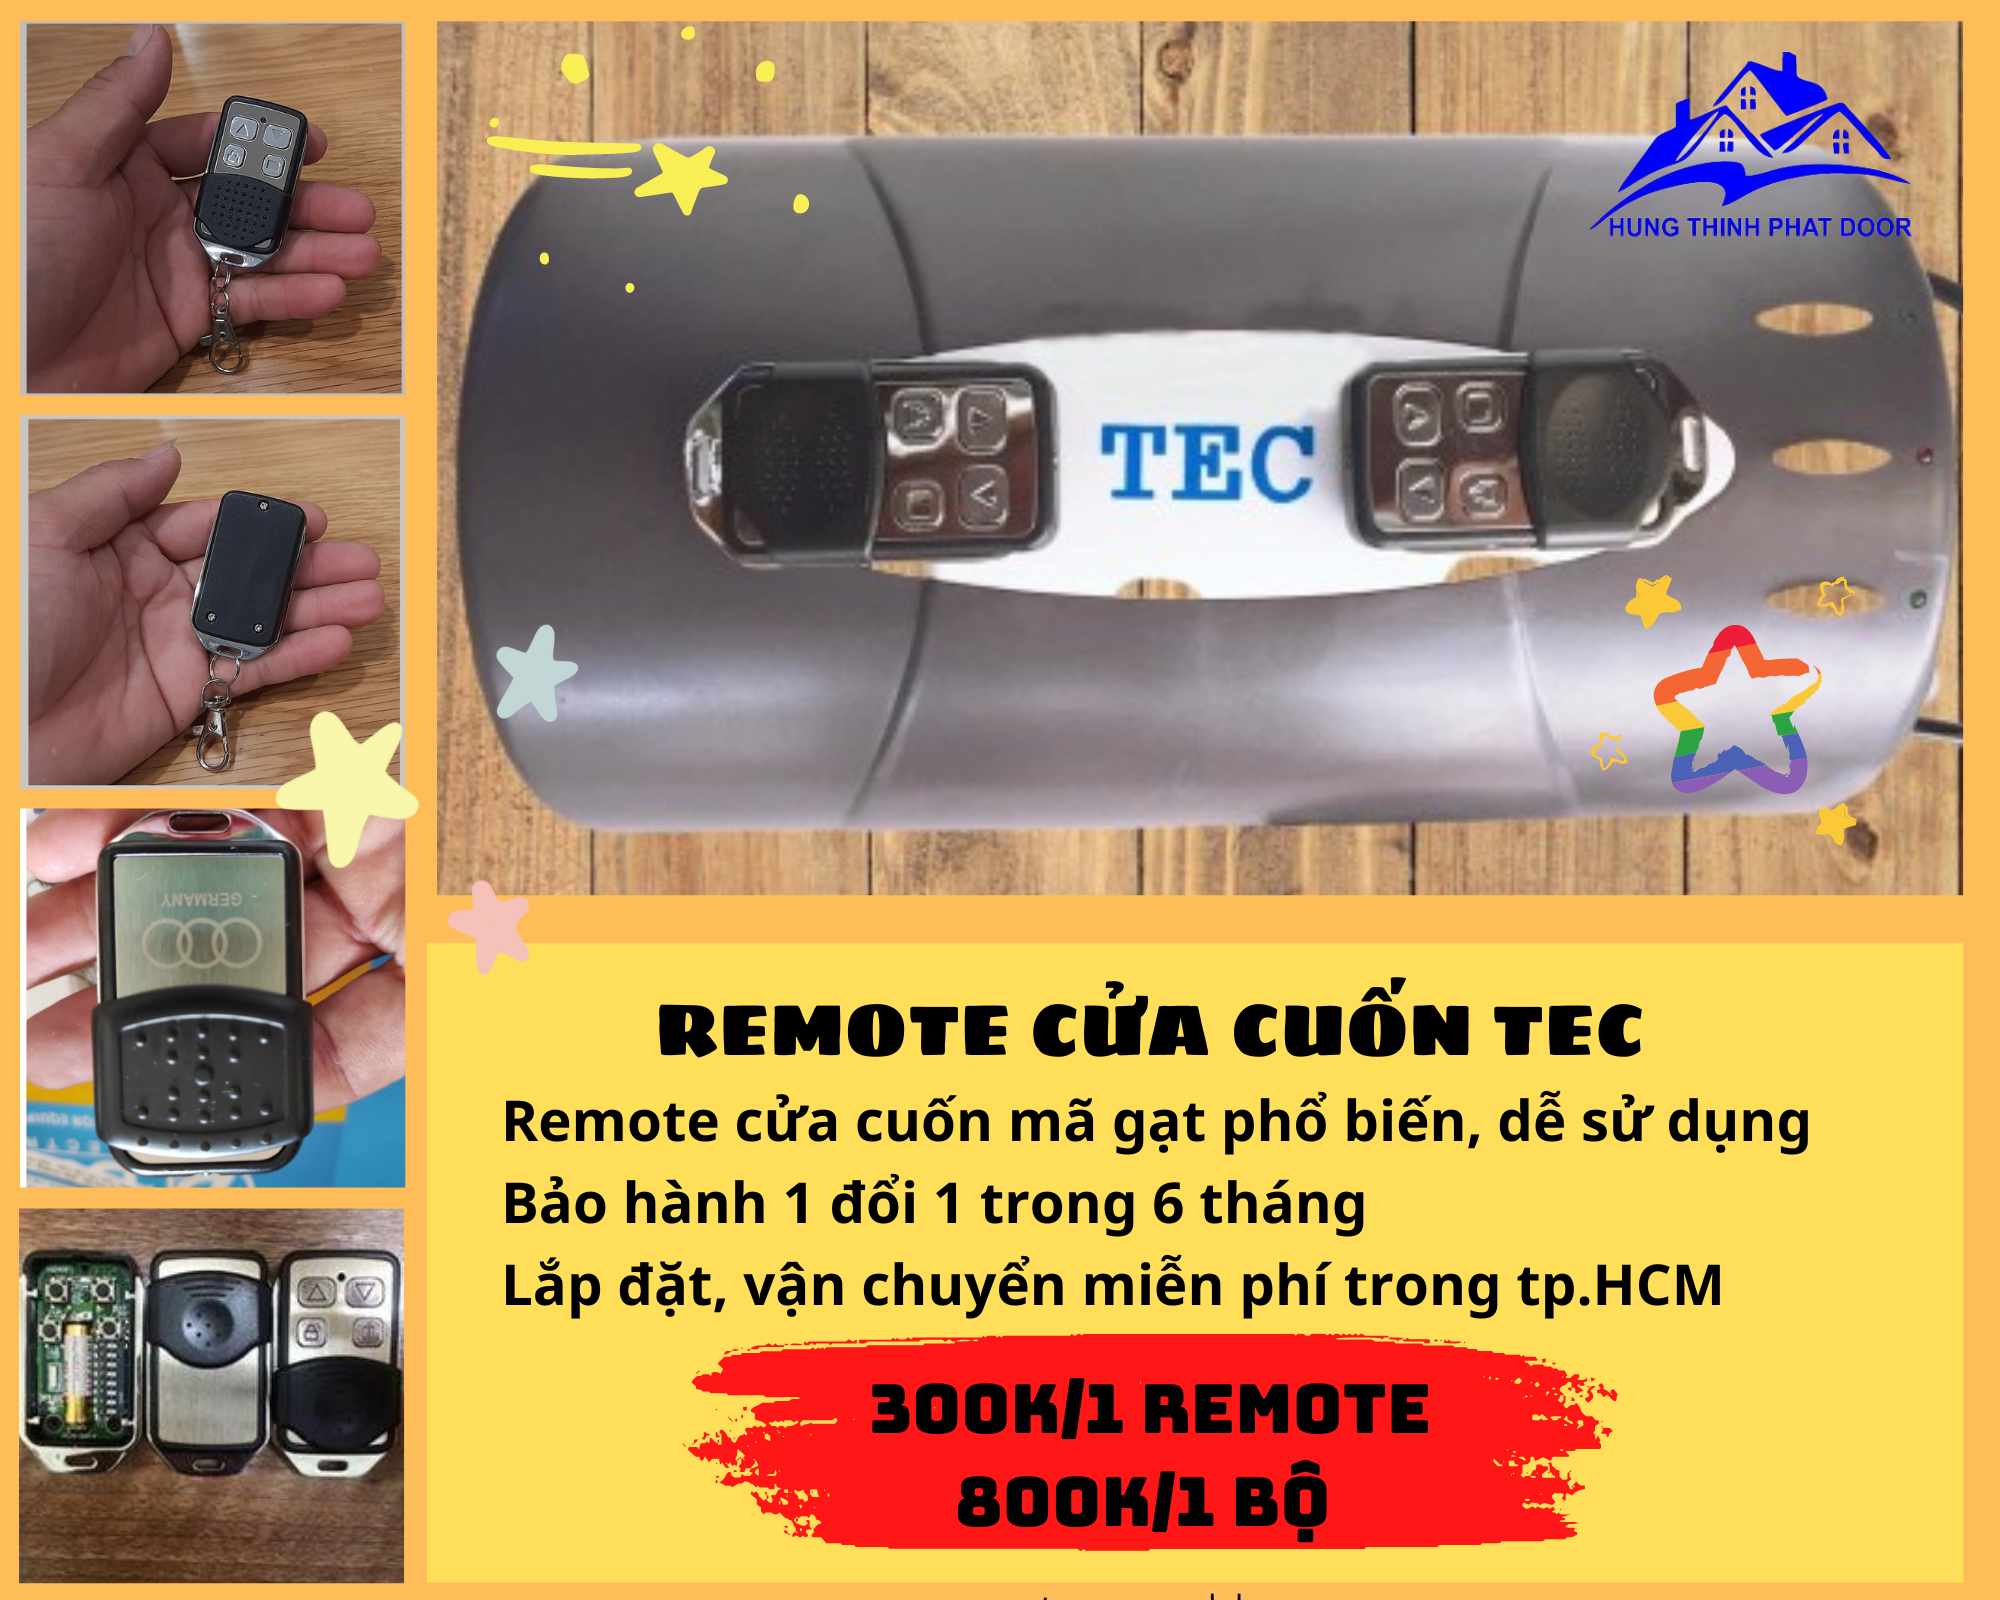 Remote Cửa Cuốn TEC